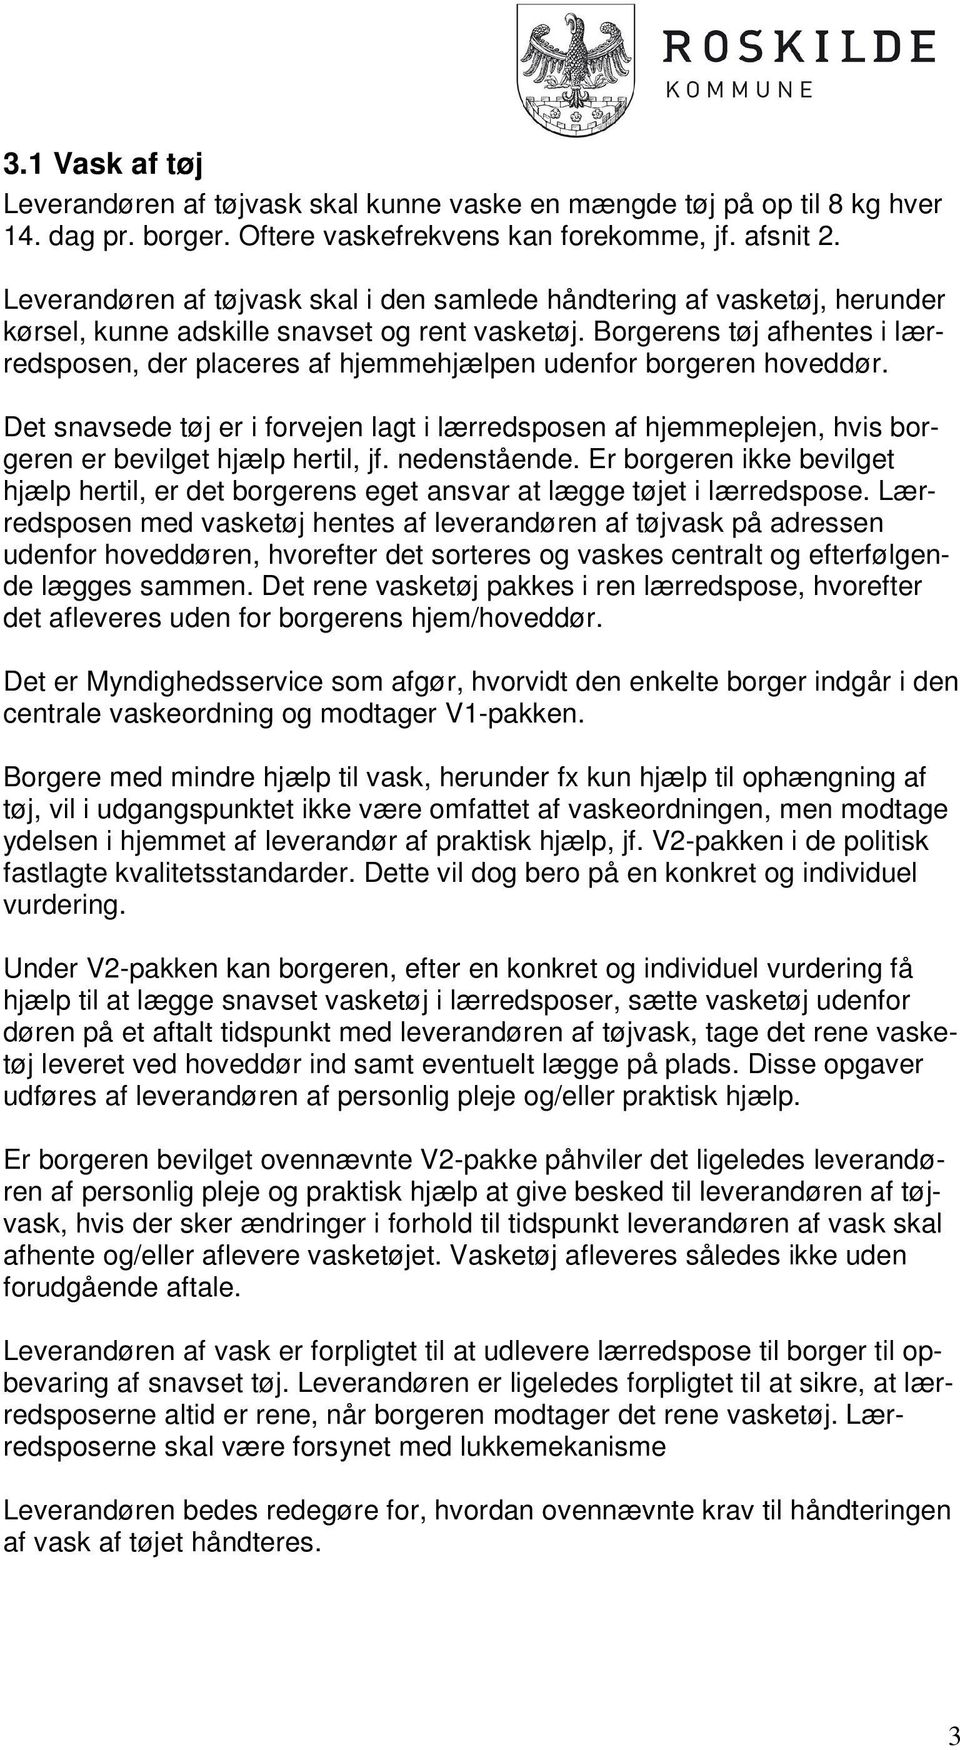 Leverandørkrav i Roskilde Kommune - PDF Gratis download